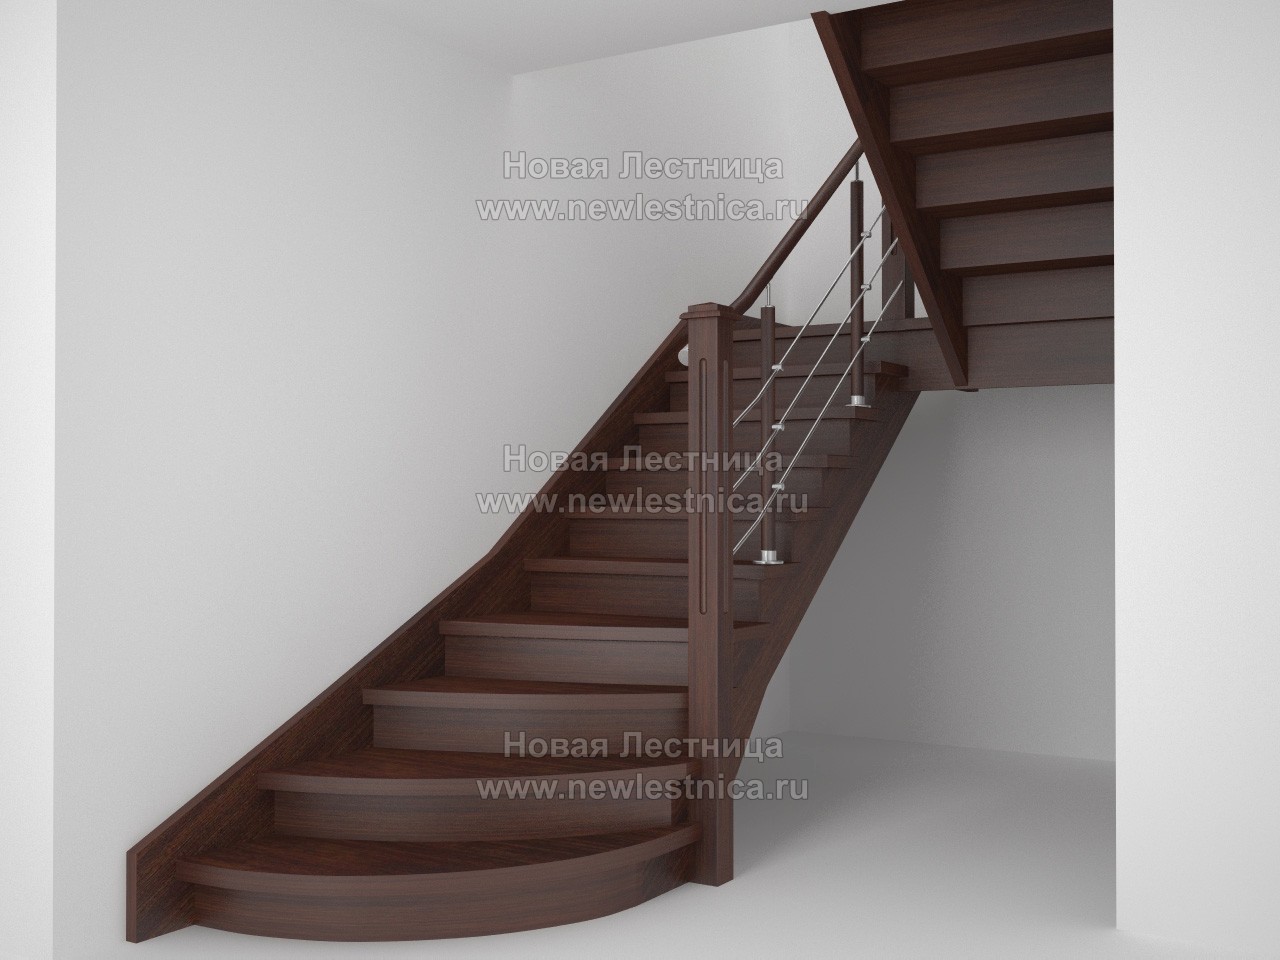 Элитная деревянная лестница из массива дуба (Проект) #02